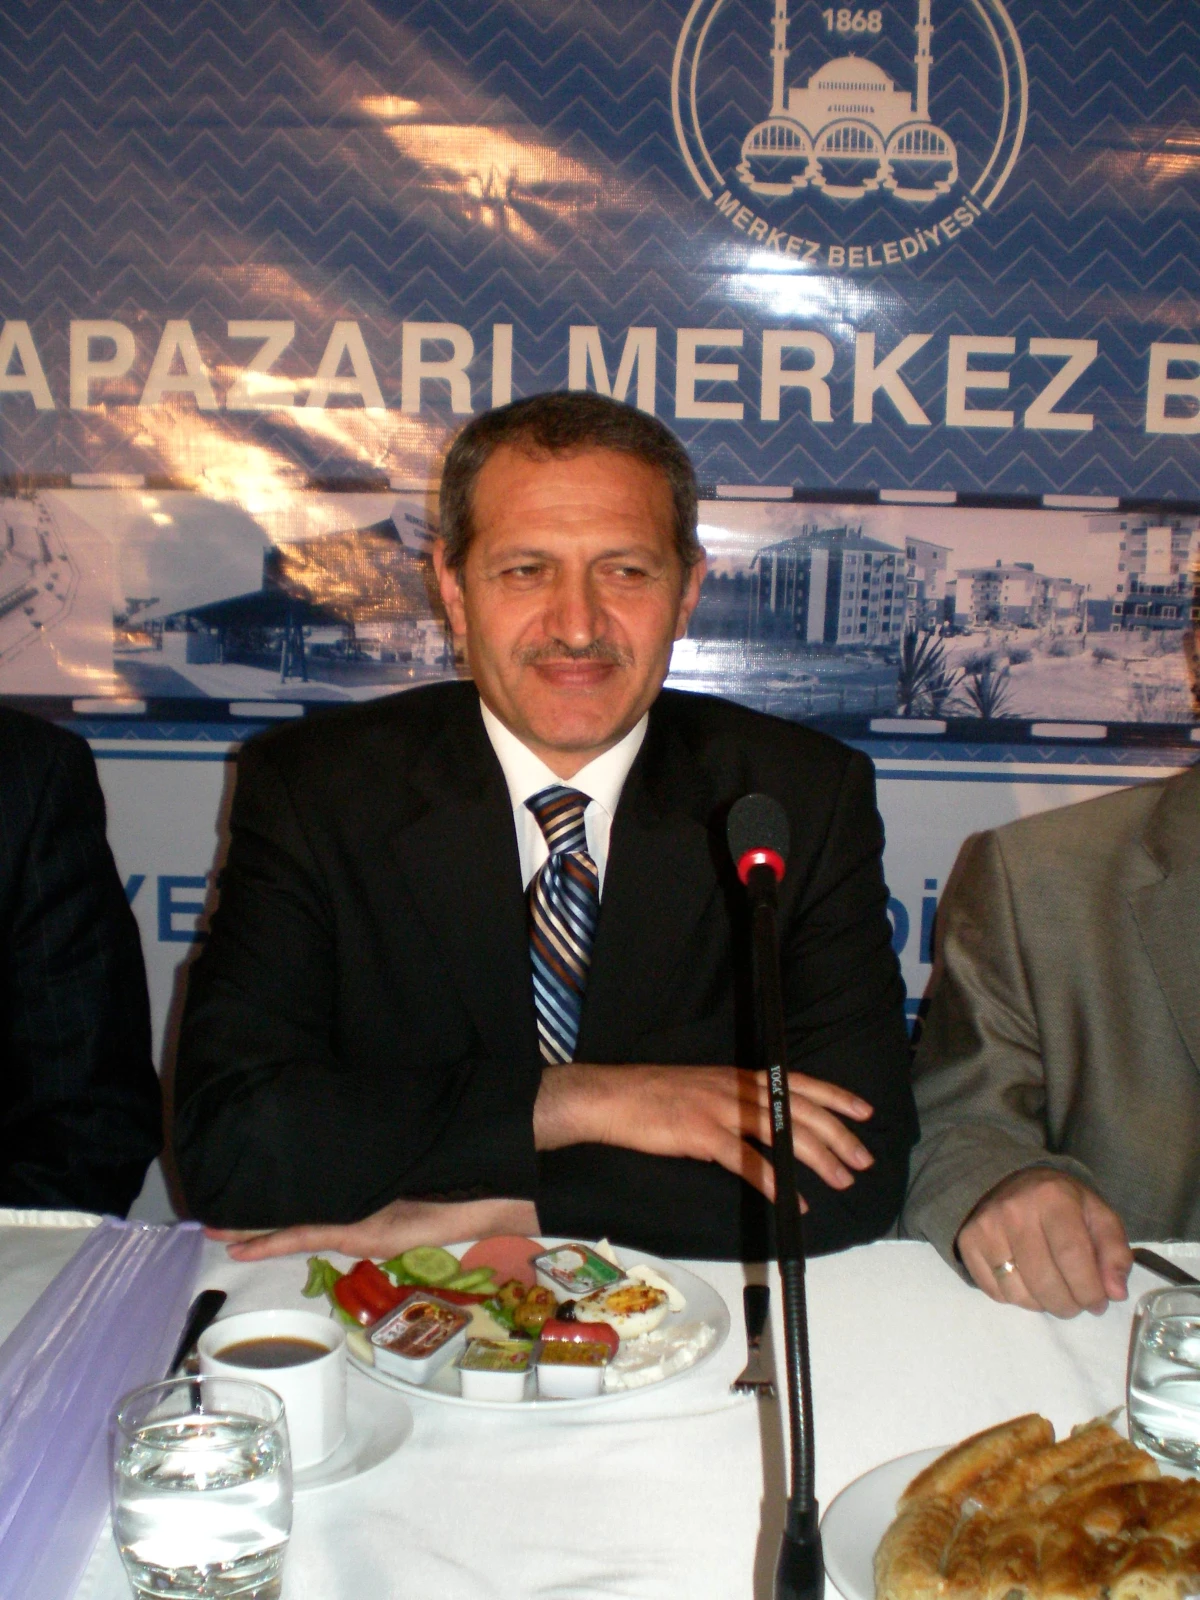 Belediye Başkanı Dişli, Çalışmalar Hakkında Bilgi Verdi